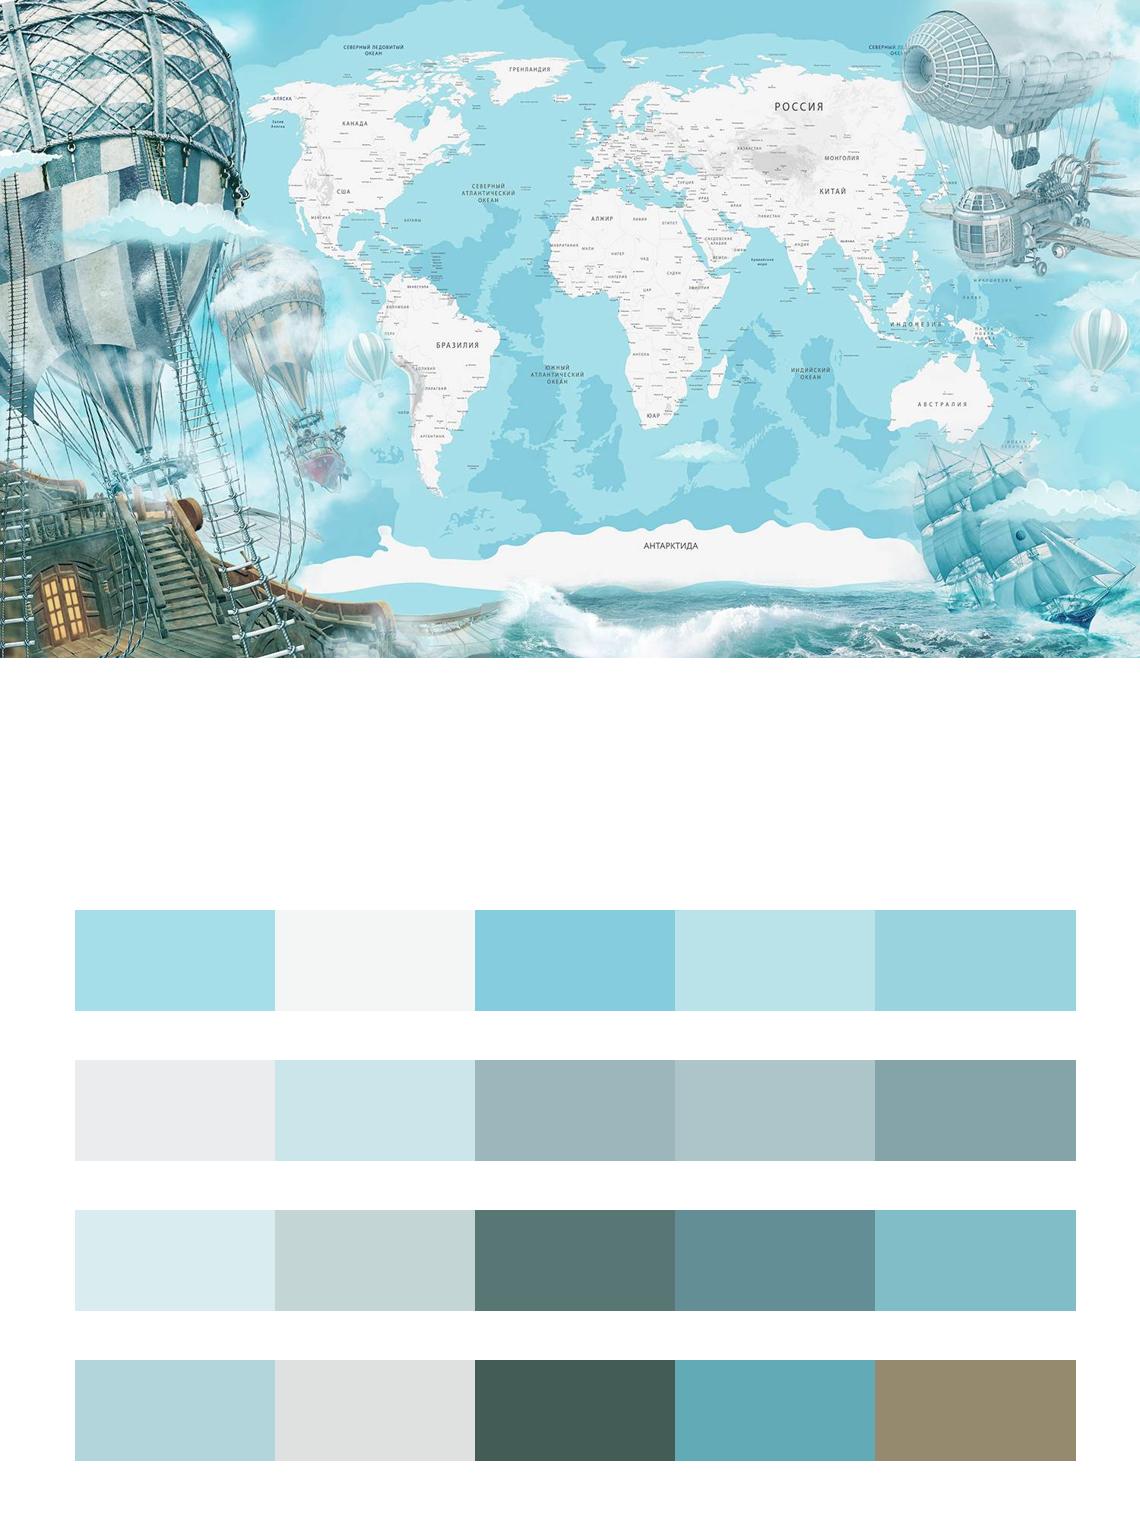 Карта на фоне моря цвета